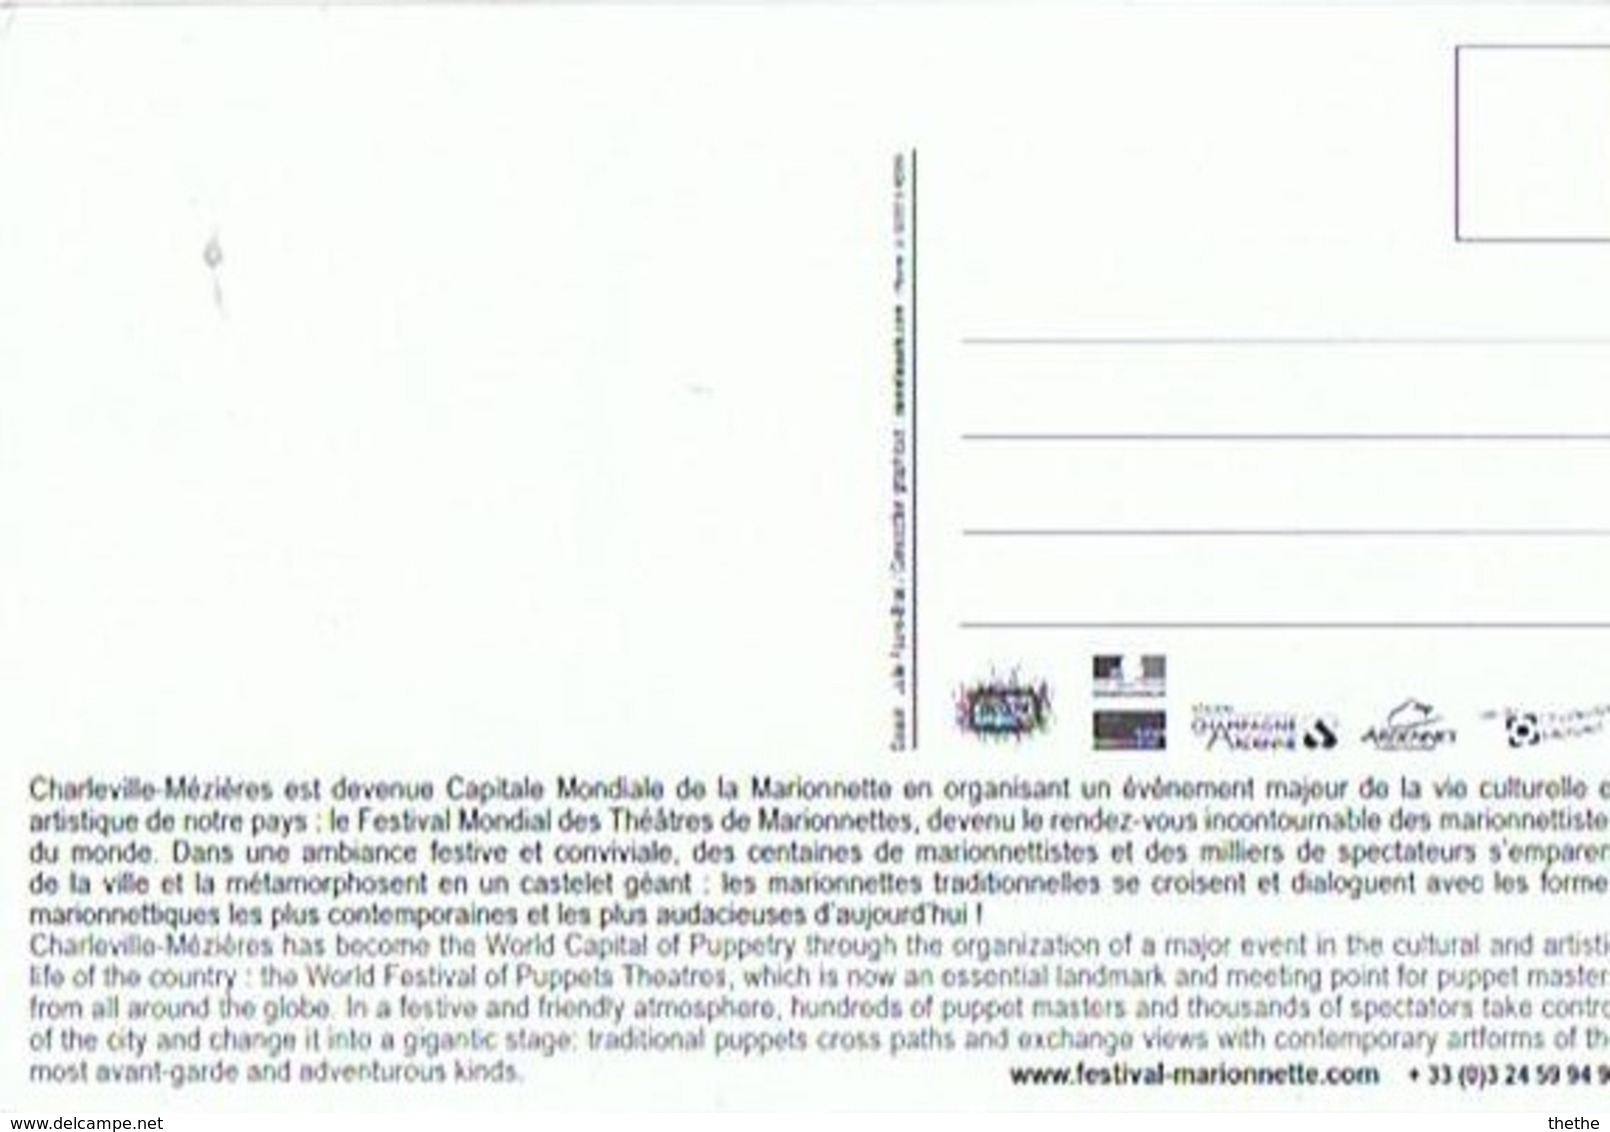 FESTIVAL MONDIAL DES THEATRES DE MARIONNETTES - CHARLEVILLE-MEZIERES -CP "Annonce" - Puppets